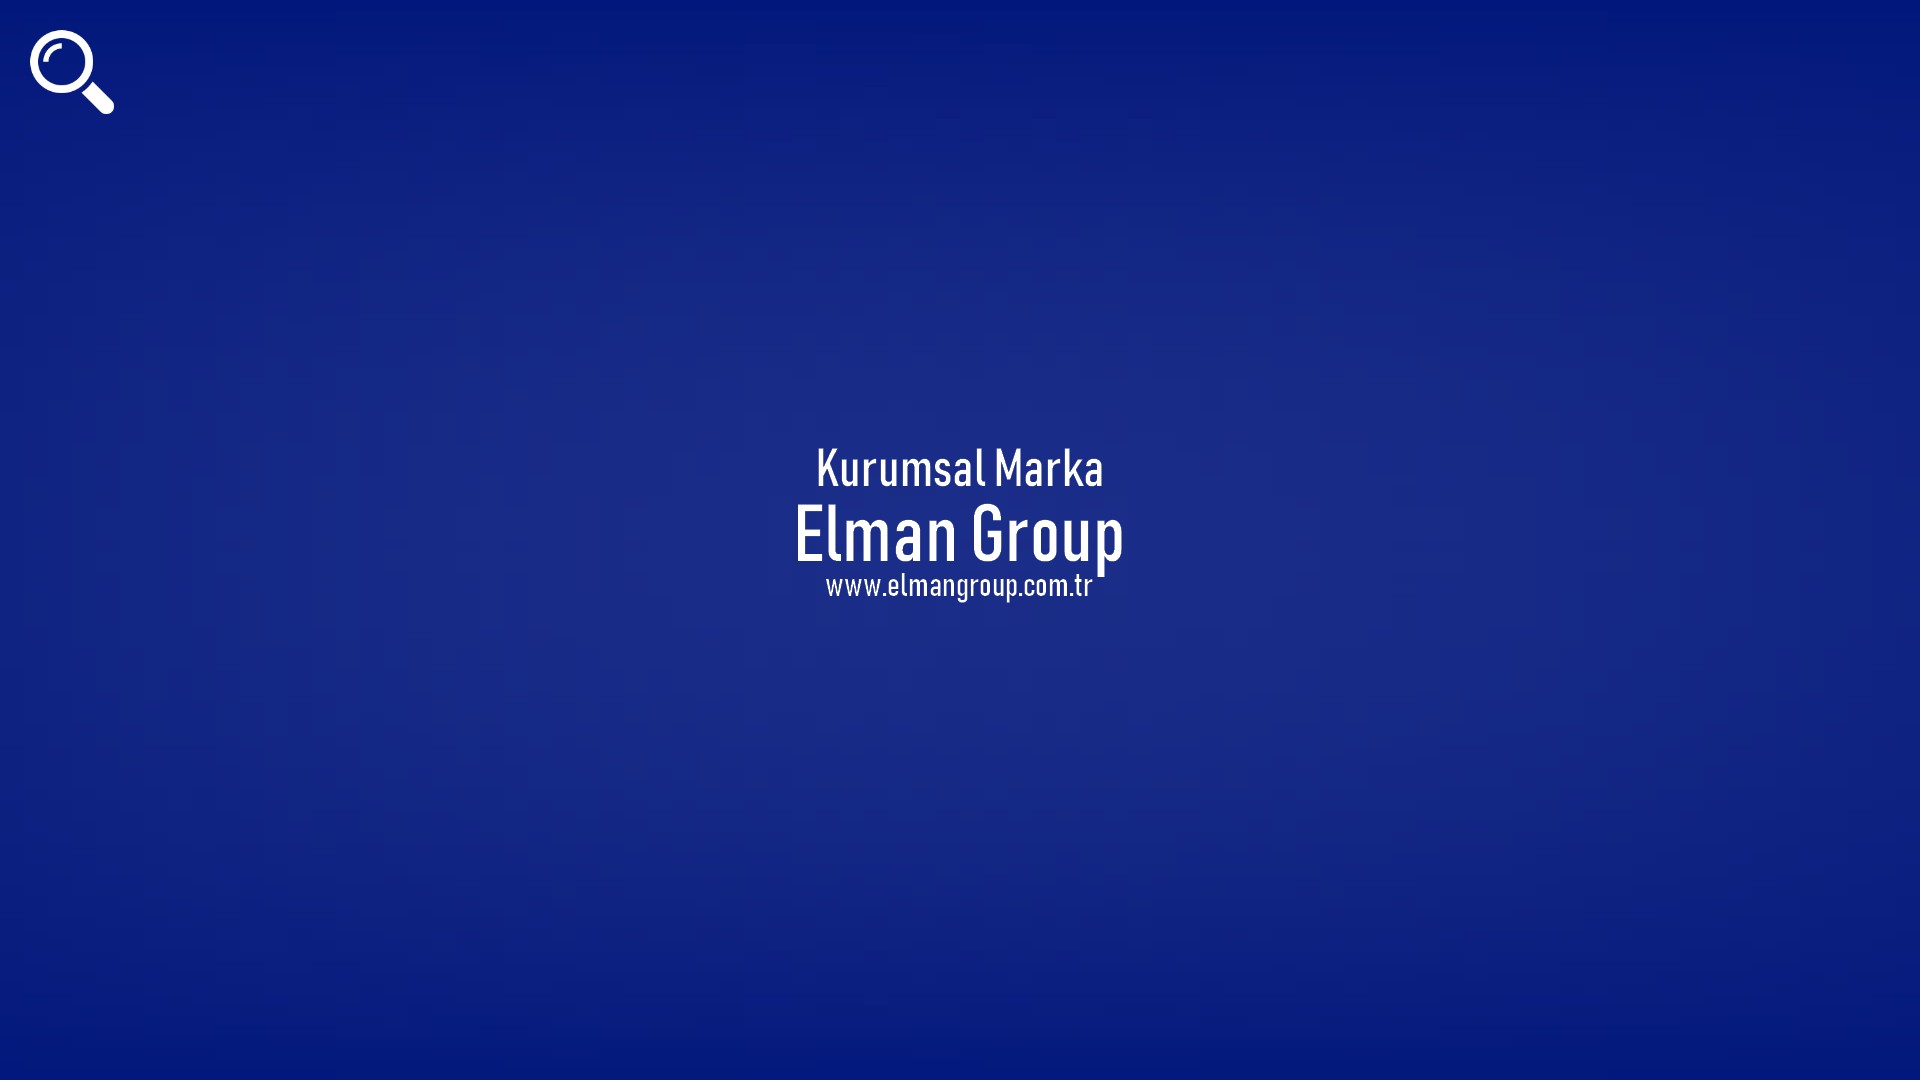 Elman Group başlıklı içeriğin resmi